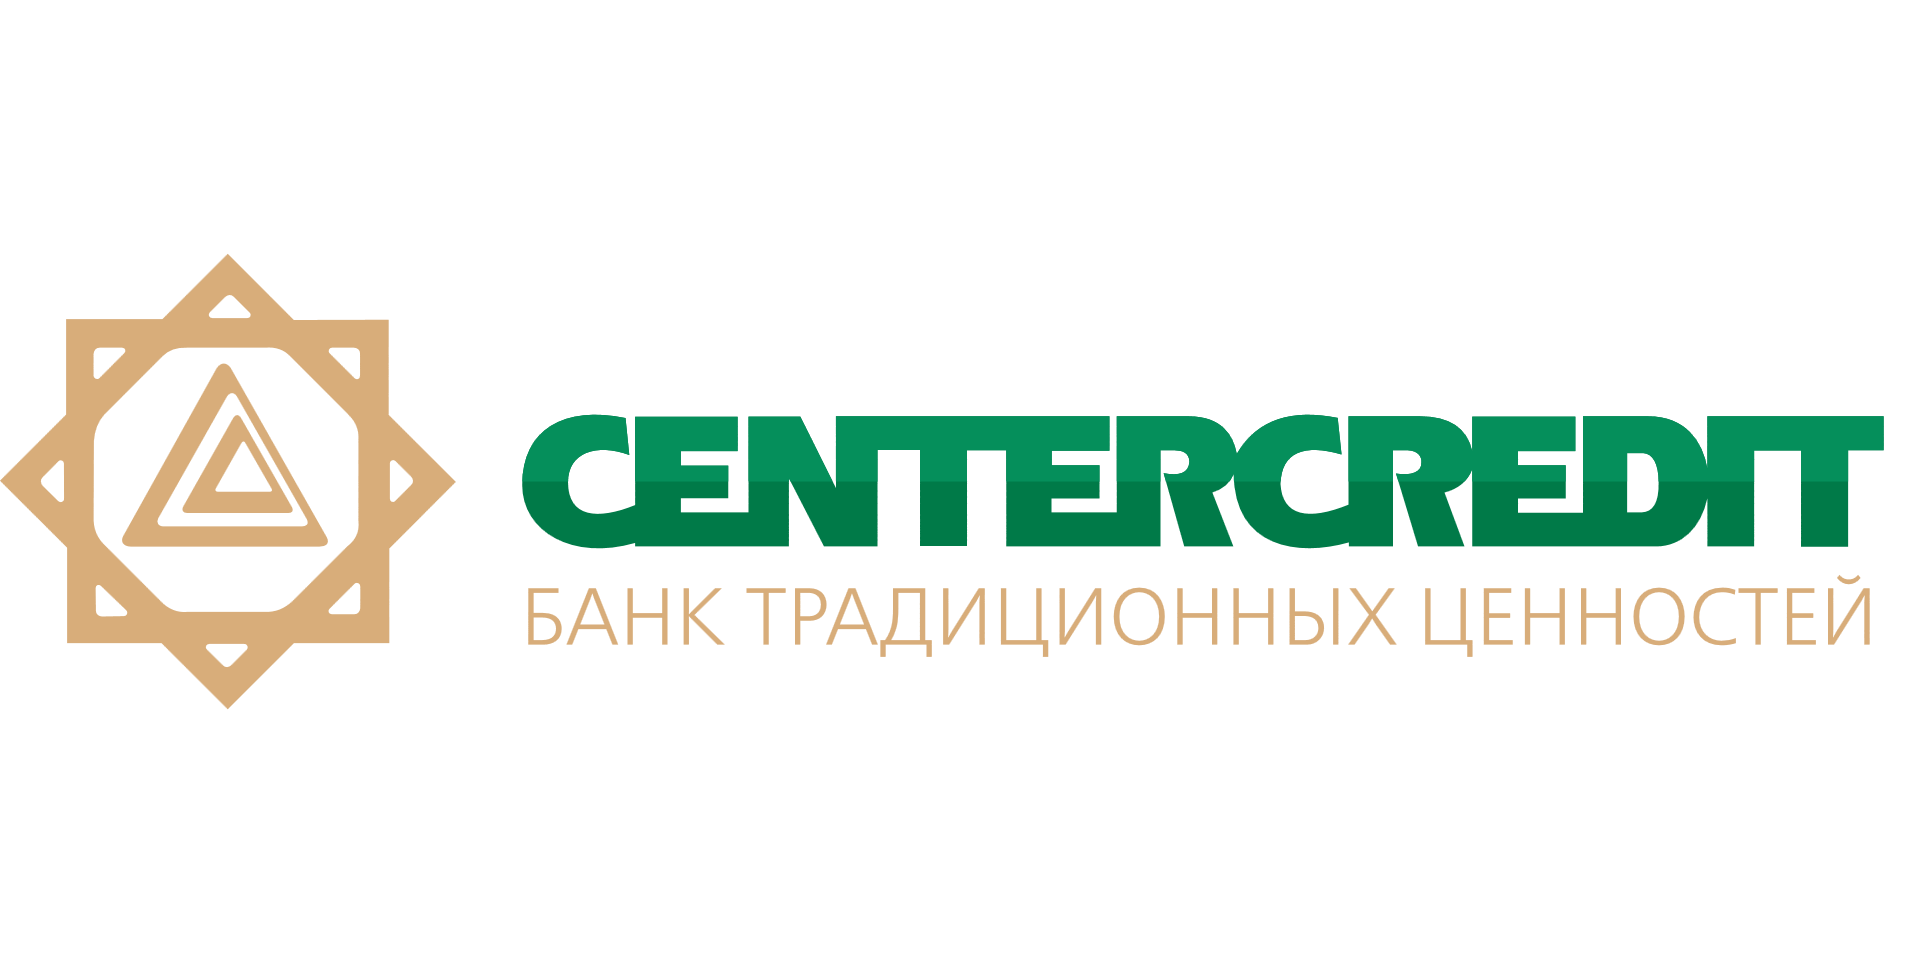 Центркредит банк kz. Bank CENTERCREDIT В Казахстане. Банк ЦЕНТРКРЕДИТ Казахстан лого. БЦК банк лого. Логотип банка ЦЕНТРКРЕДИТ.